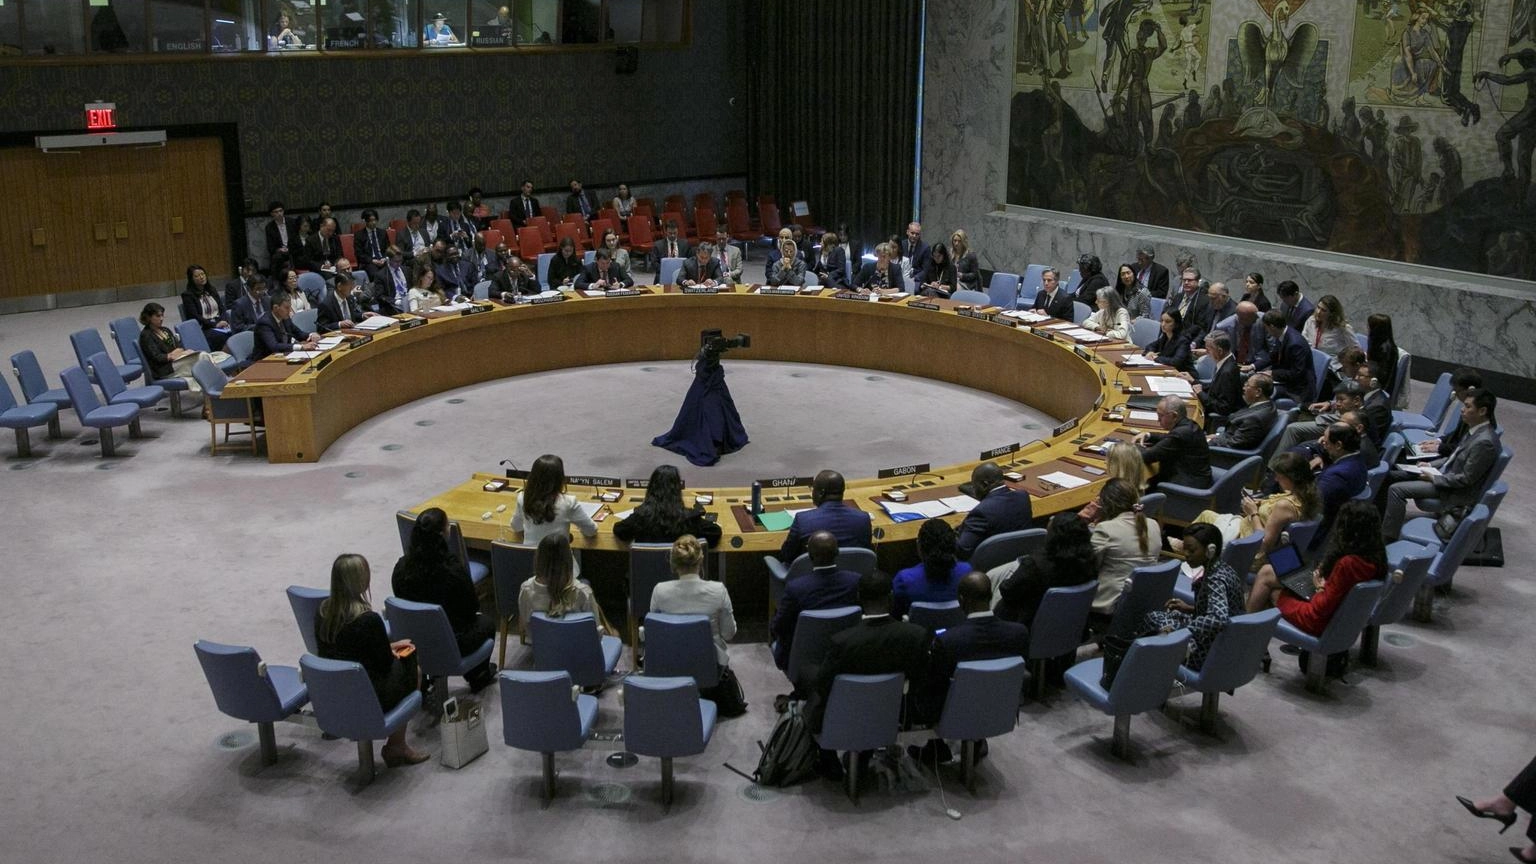 Onu, Russia blocca col veto risoluzione su sanzioni al Mali +